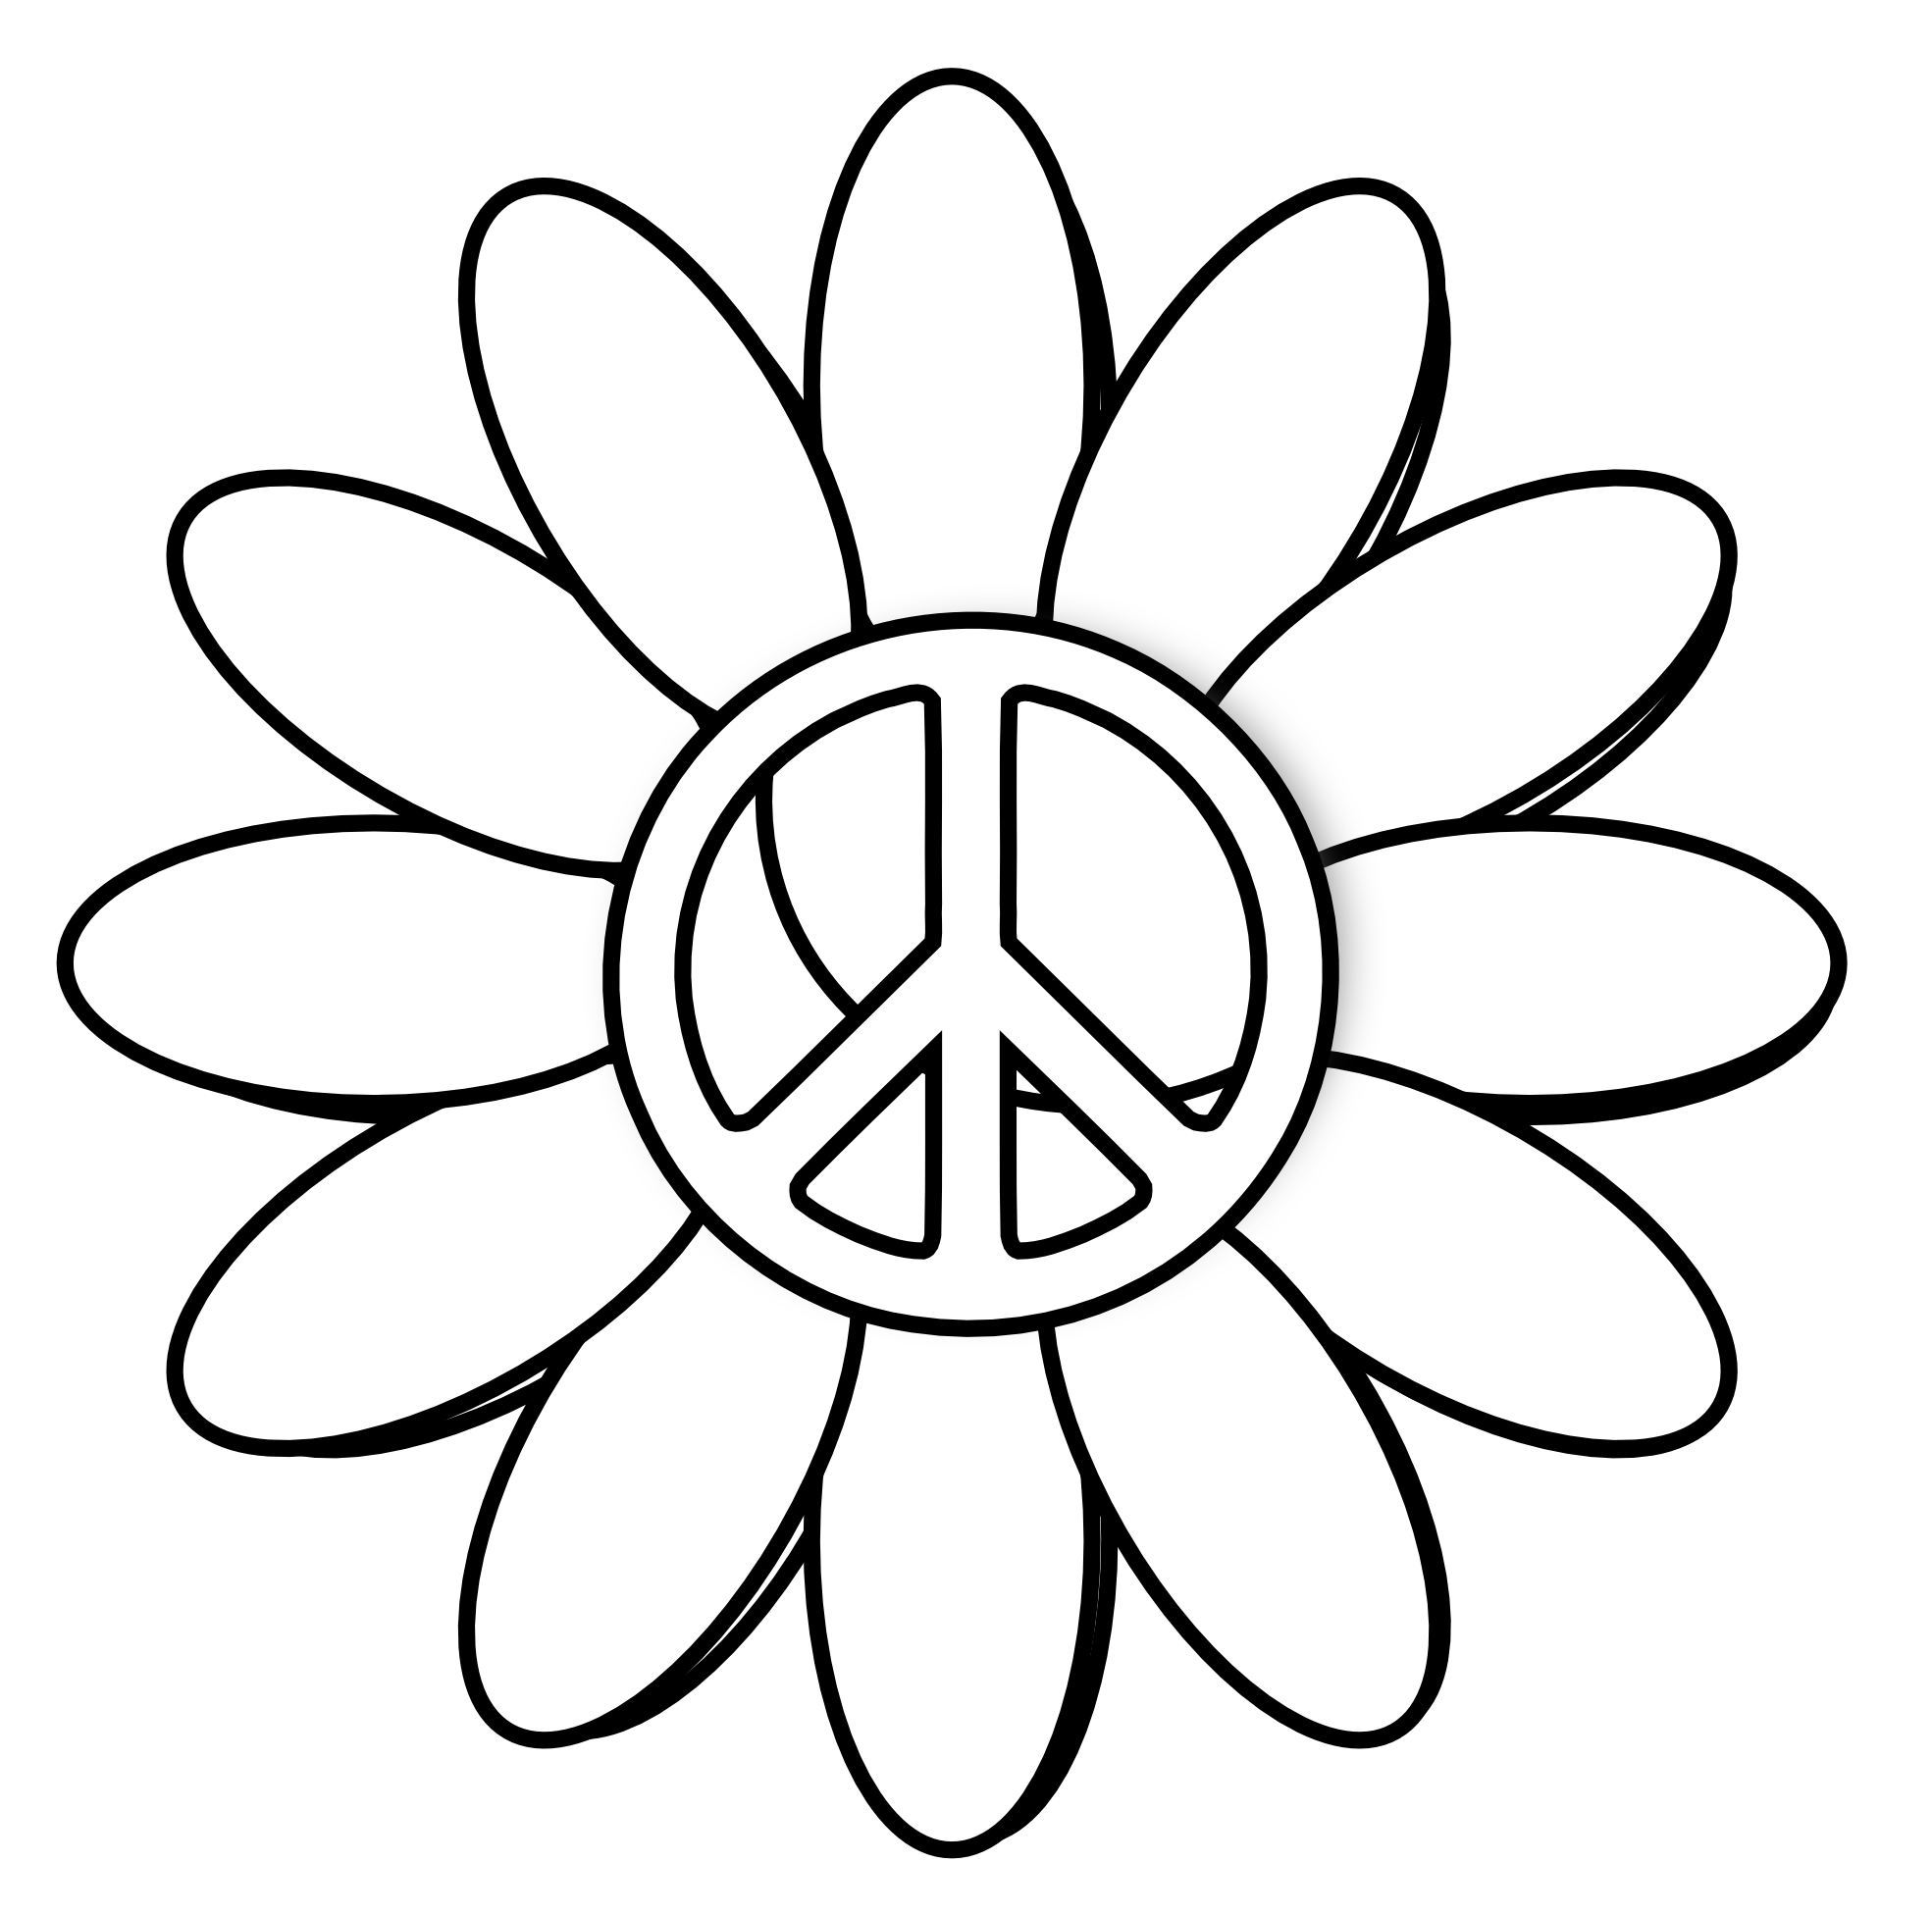 Clip Art: peace symbol peace sign flower 6 black - ClipArt Best